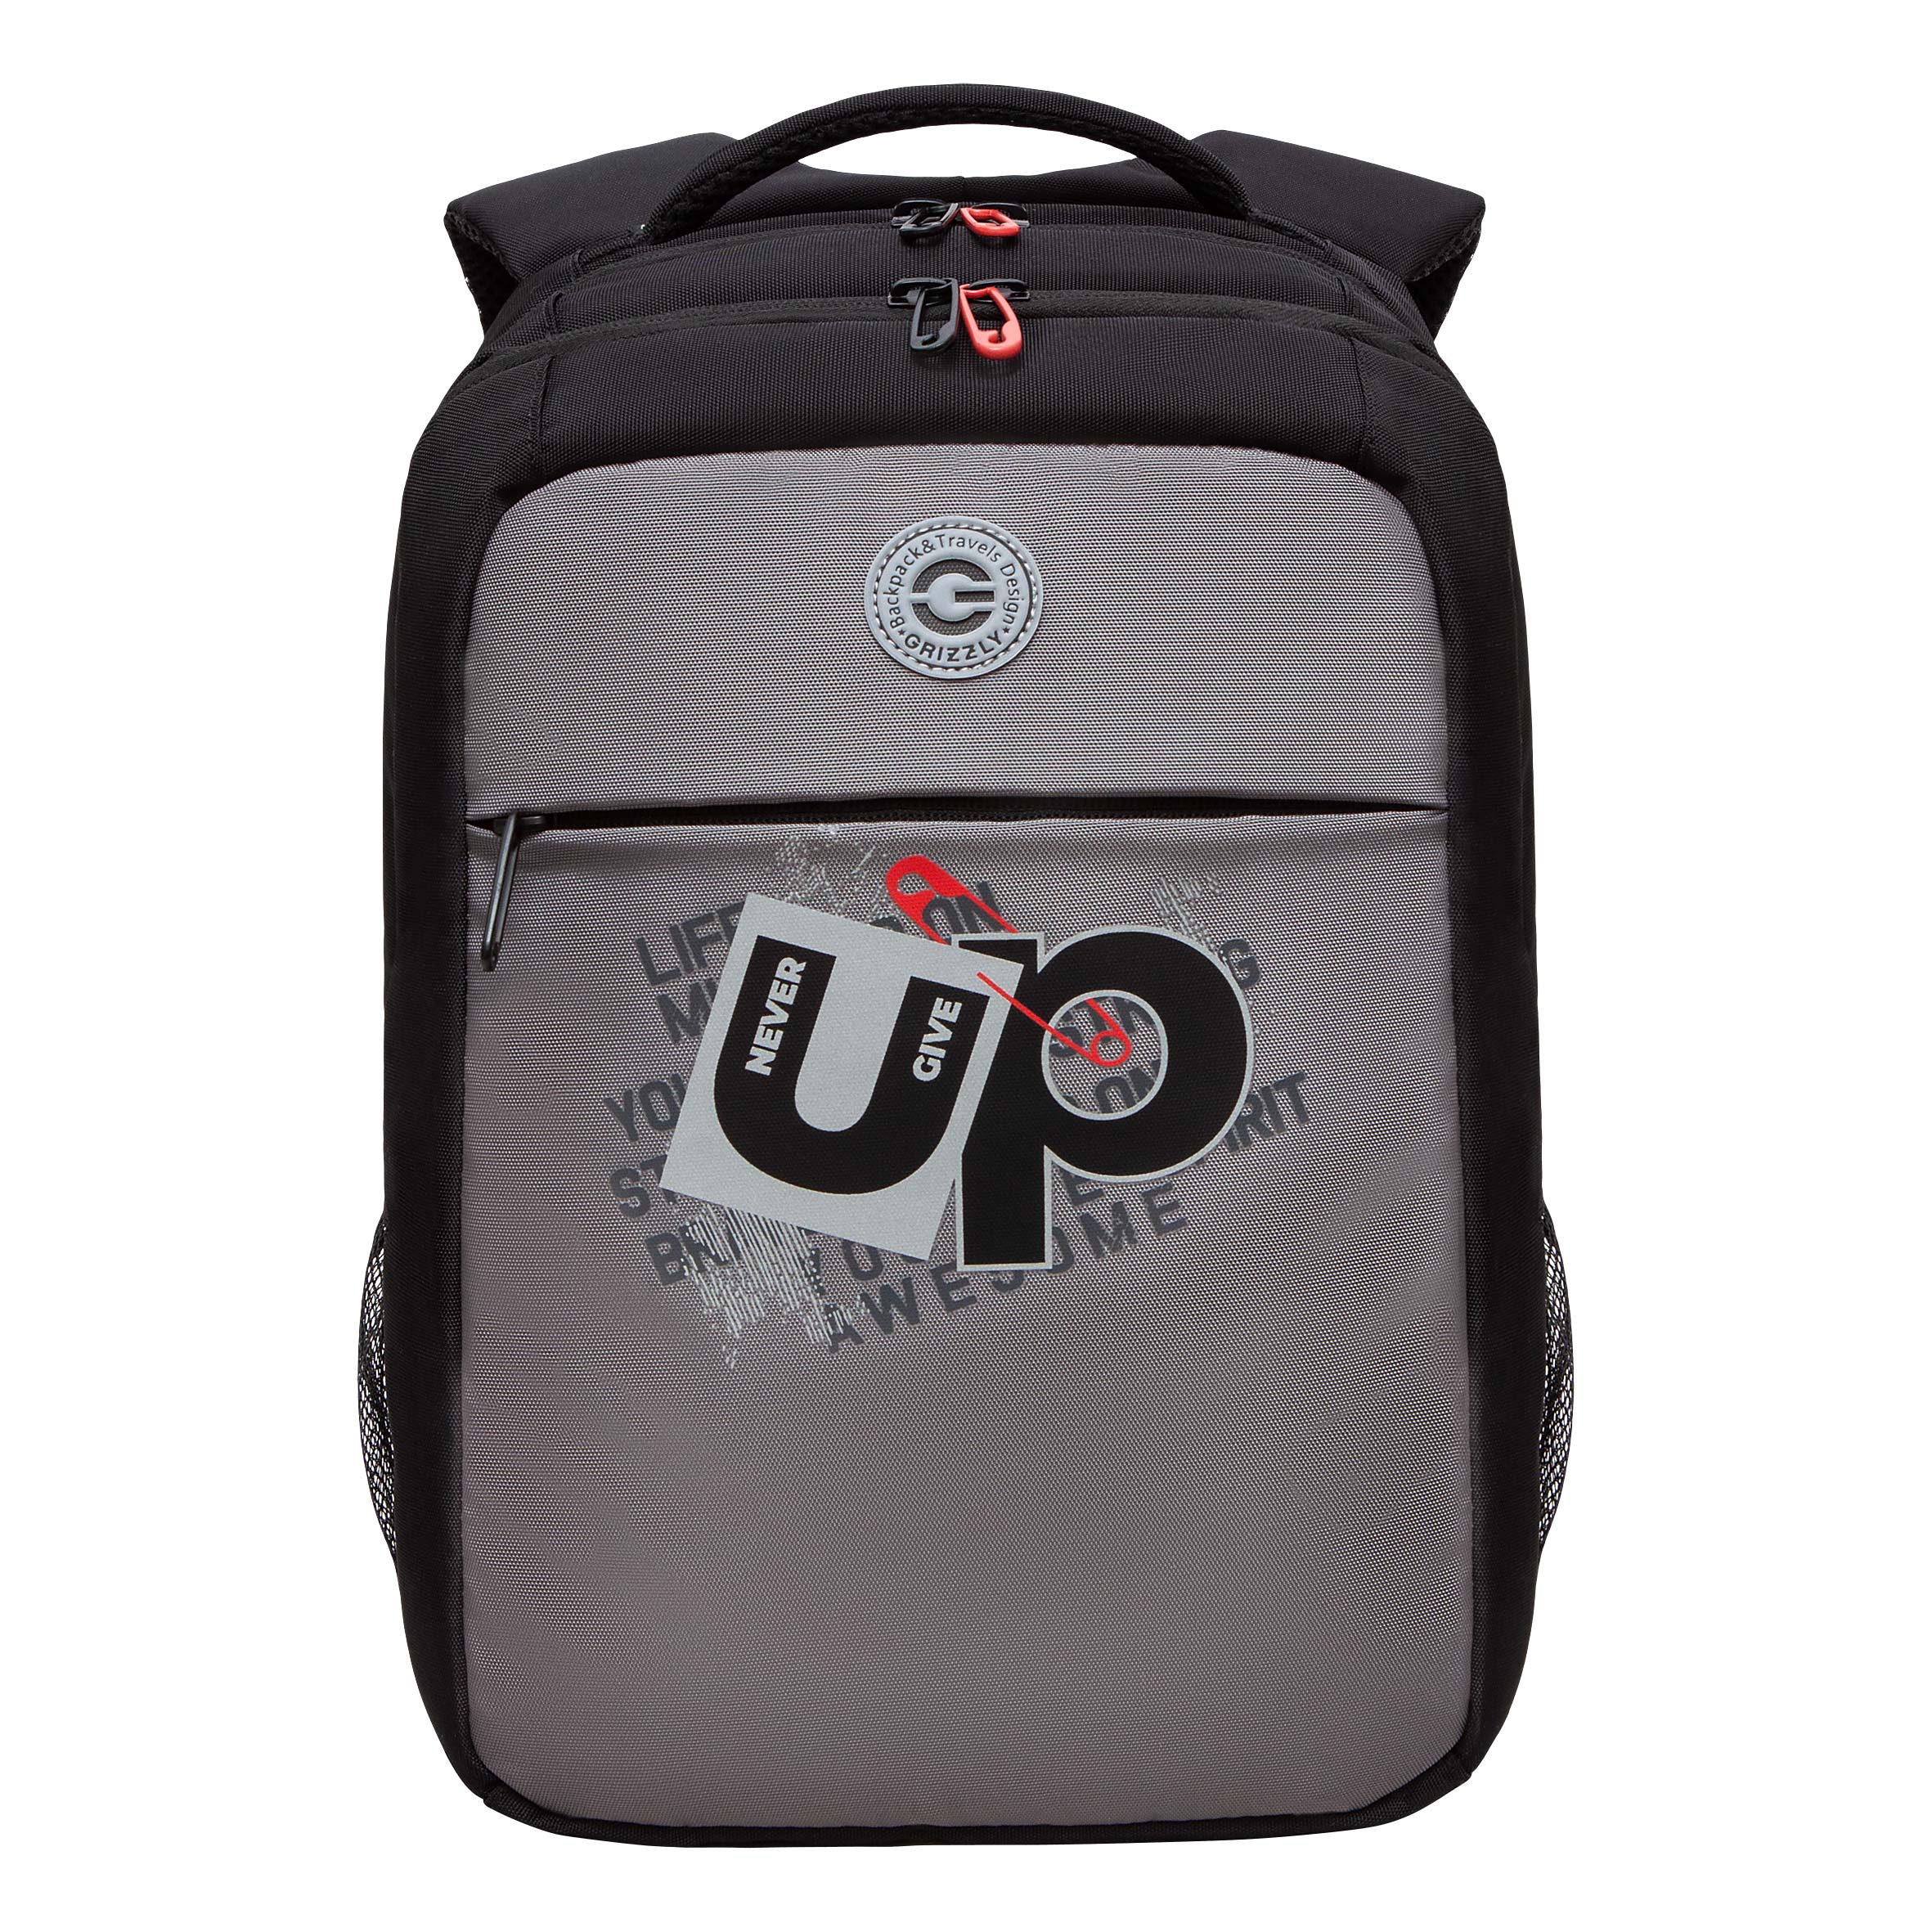 Рюкзак молодежный GRIZZLY с карманом для ноутбука 13, для мальчика, RB-456-3 2 рюкзак для ноутбука 13 3 sumdex pon 266gy